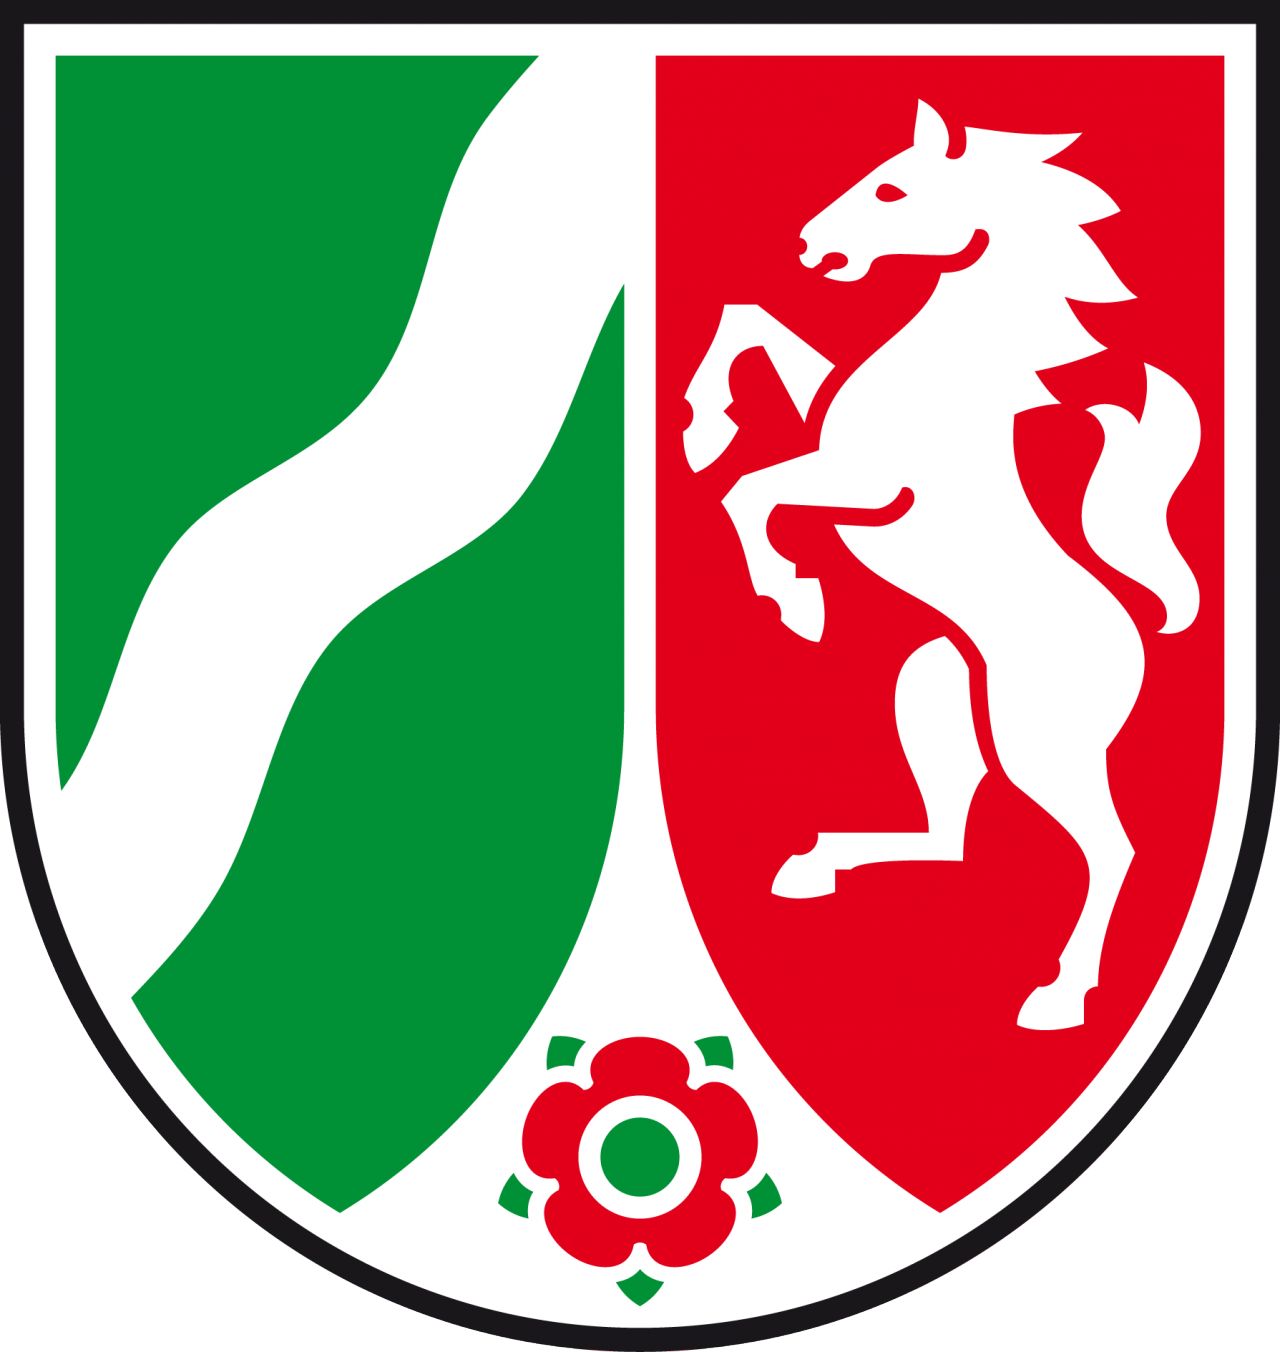 NRW Logo